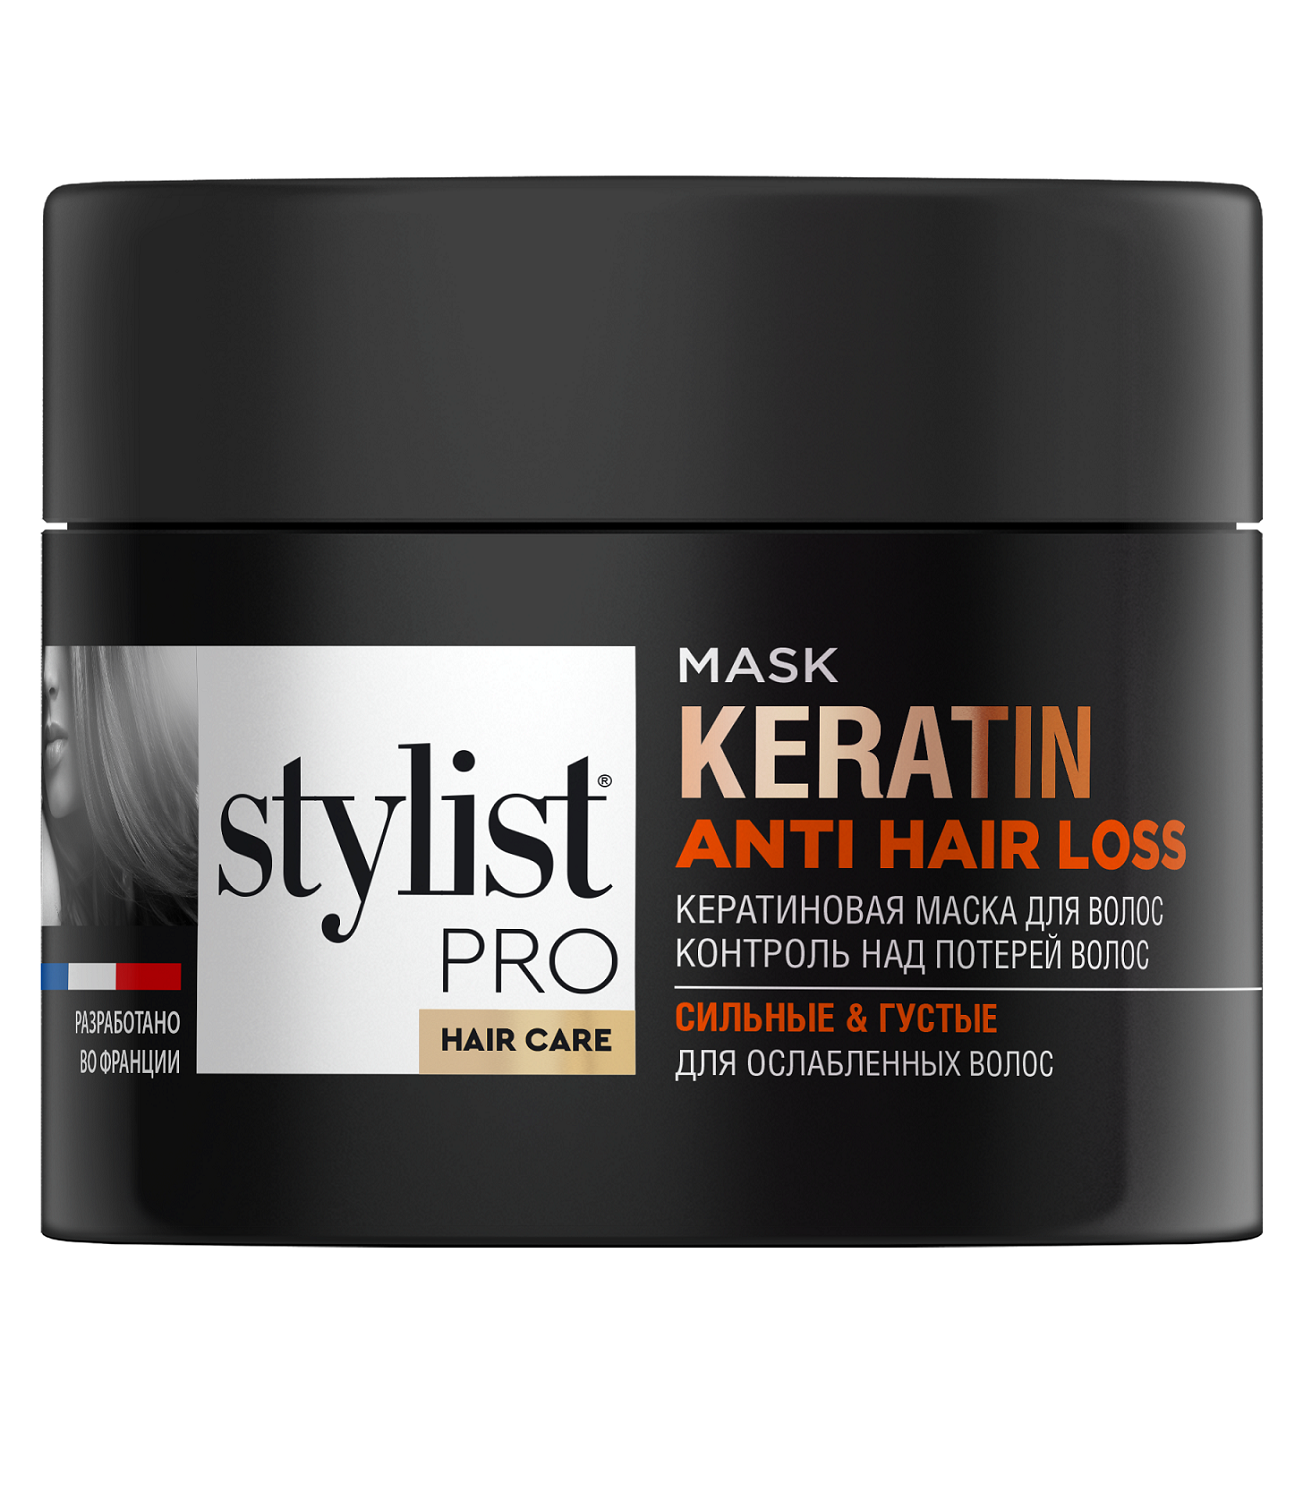 Маска для волос STYLIST PRO hair care Кератиновая контроль над потерей волос 220мл - в интернет-магазине tut-beauty.by